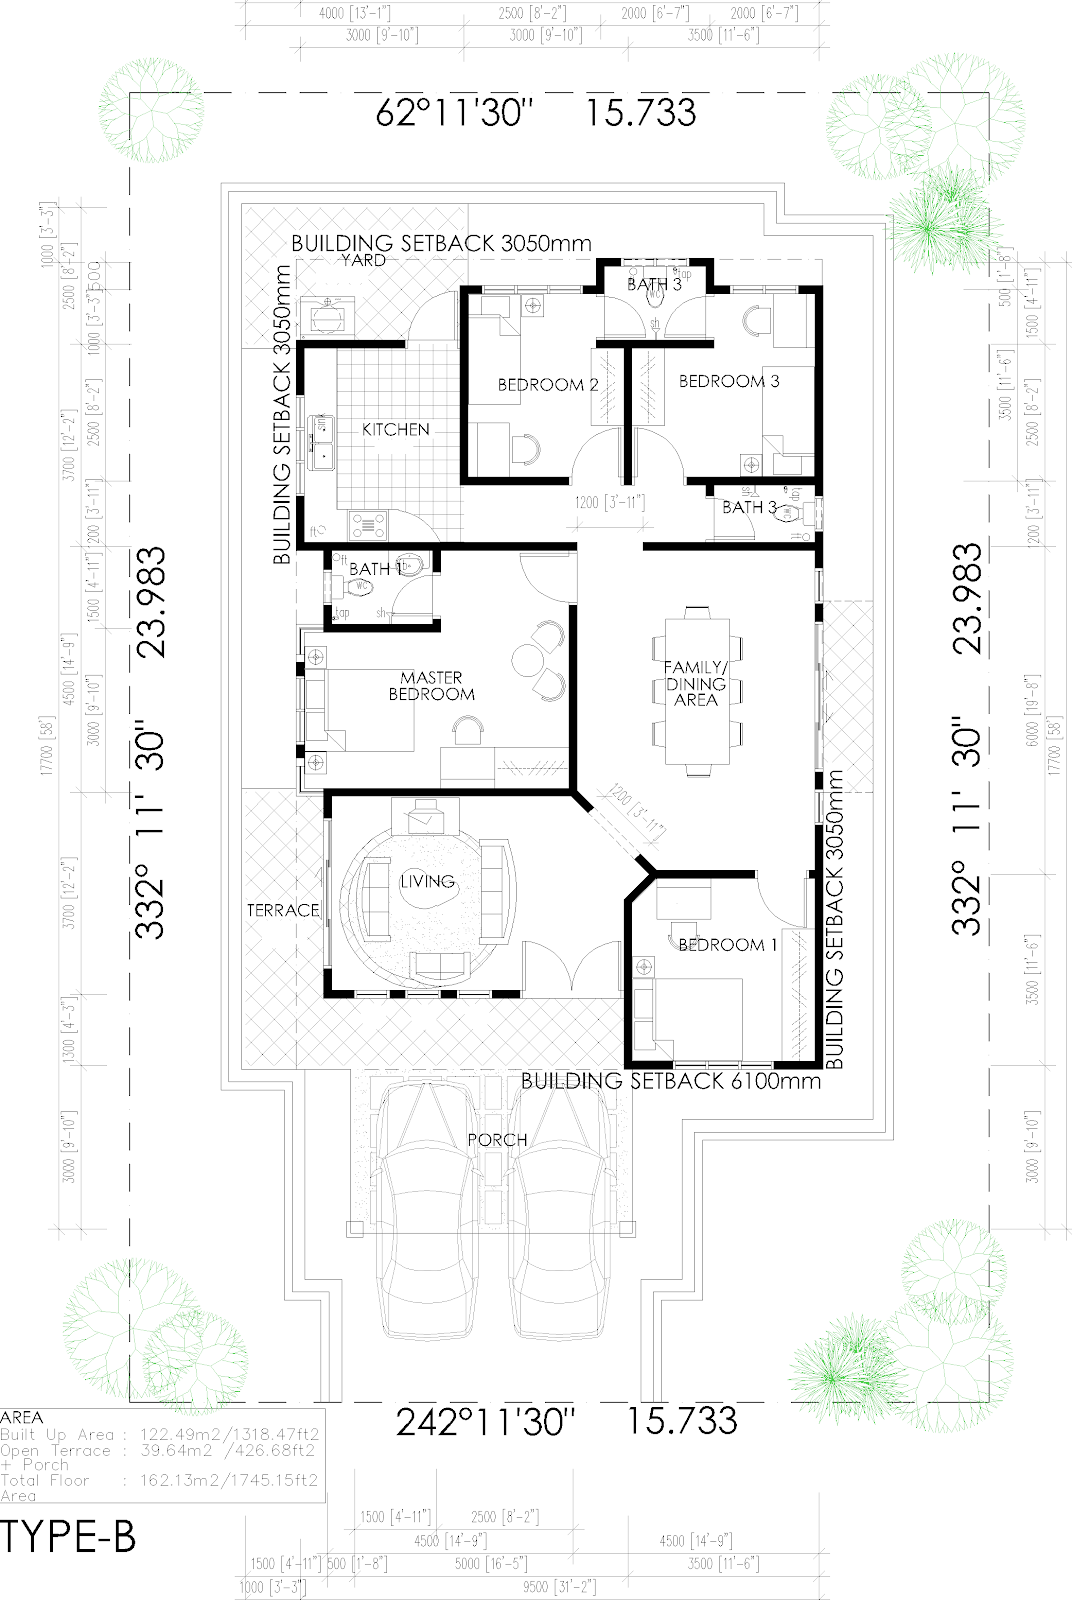 Contoh Design Rumah 1 Tingkat Malaysia Home Design Plans 